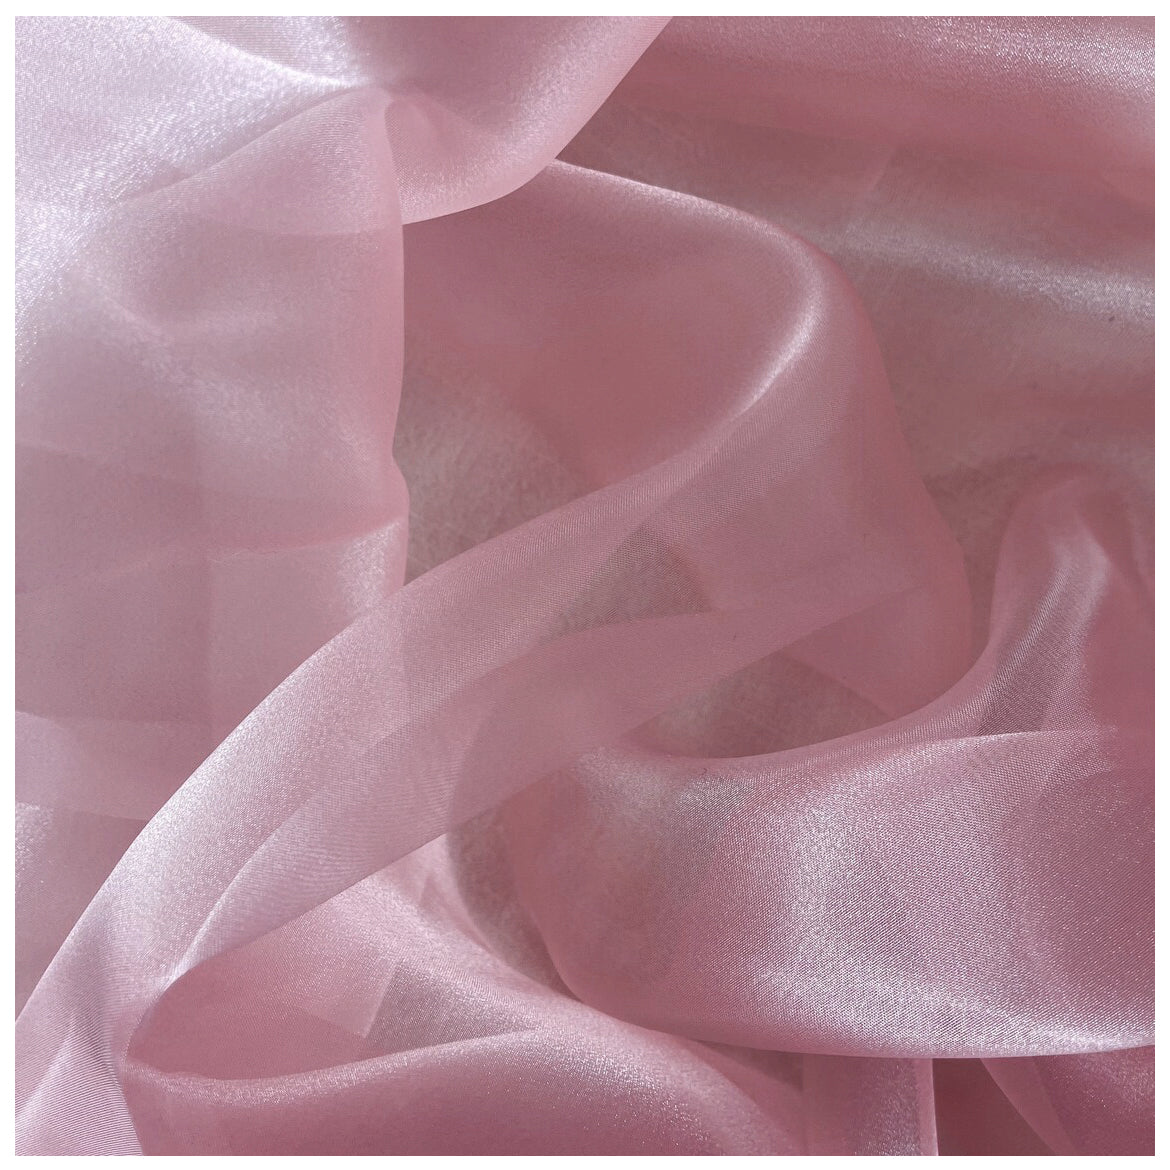 Blush Pink,ab13b071-cdbf-48ed-bfb1-3bdac4cfb98c